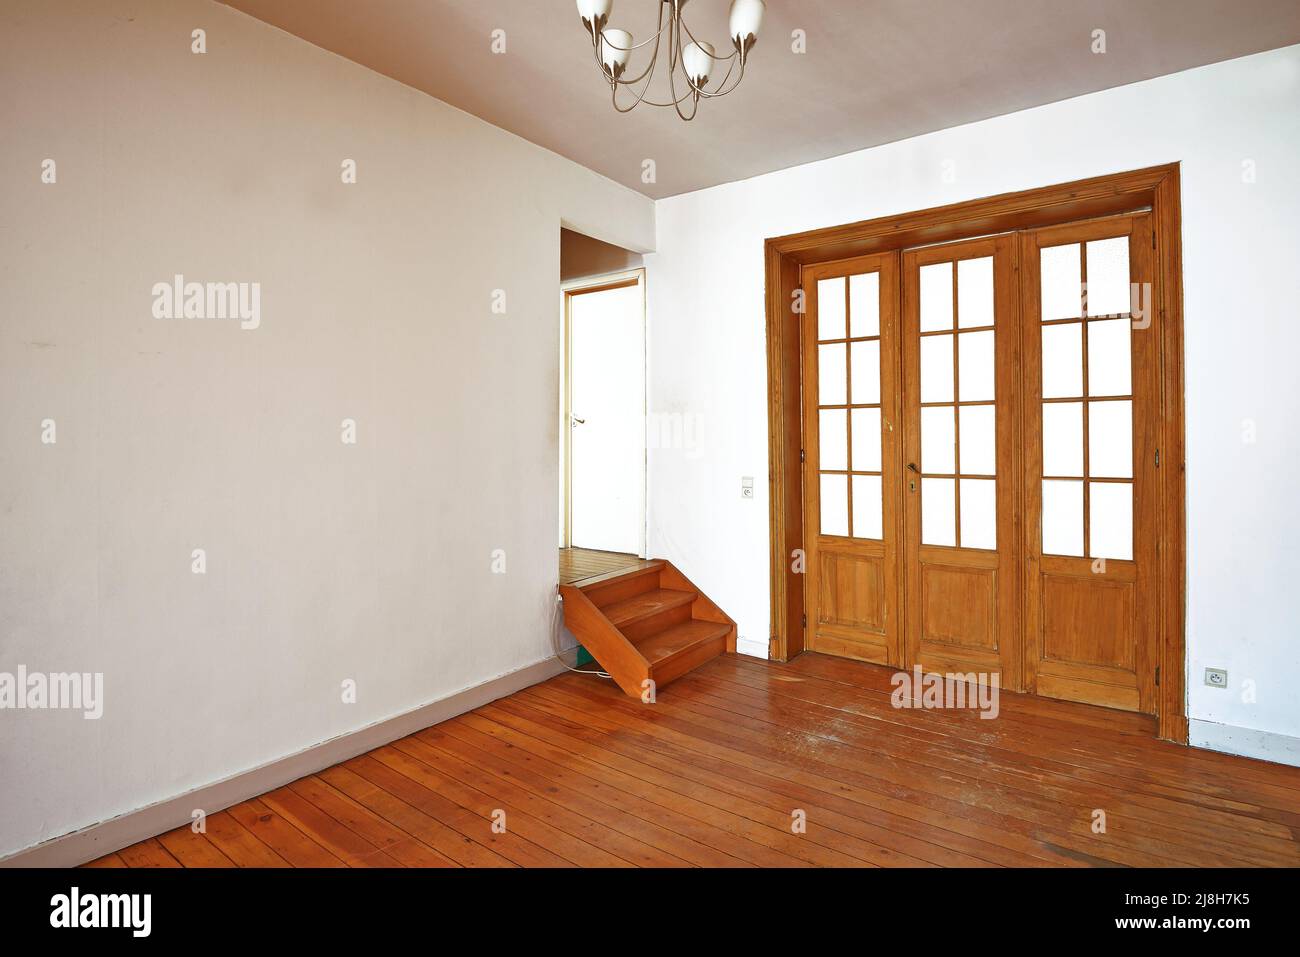 Innen gealterte Holztür mit Glasrahmen im leeren Raum Stockfoto